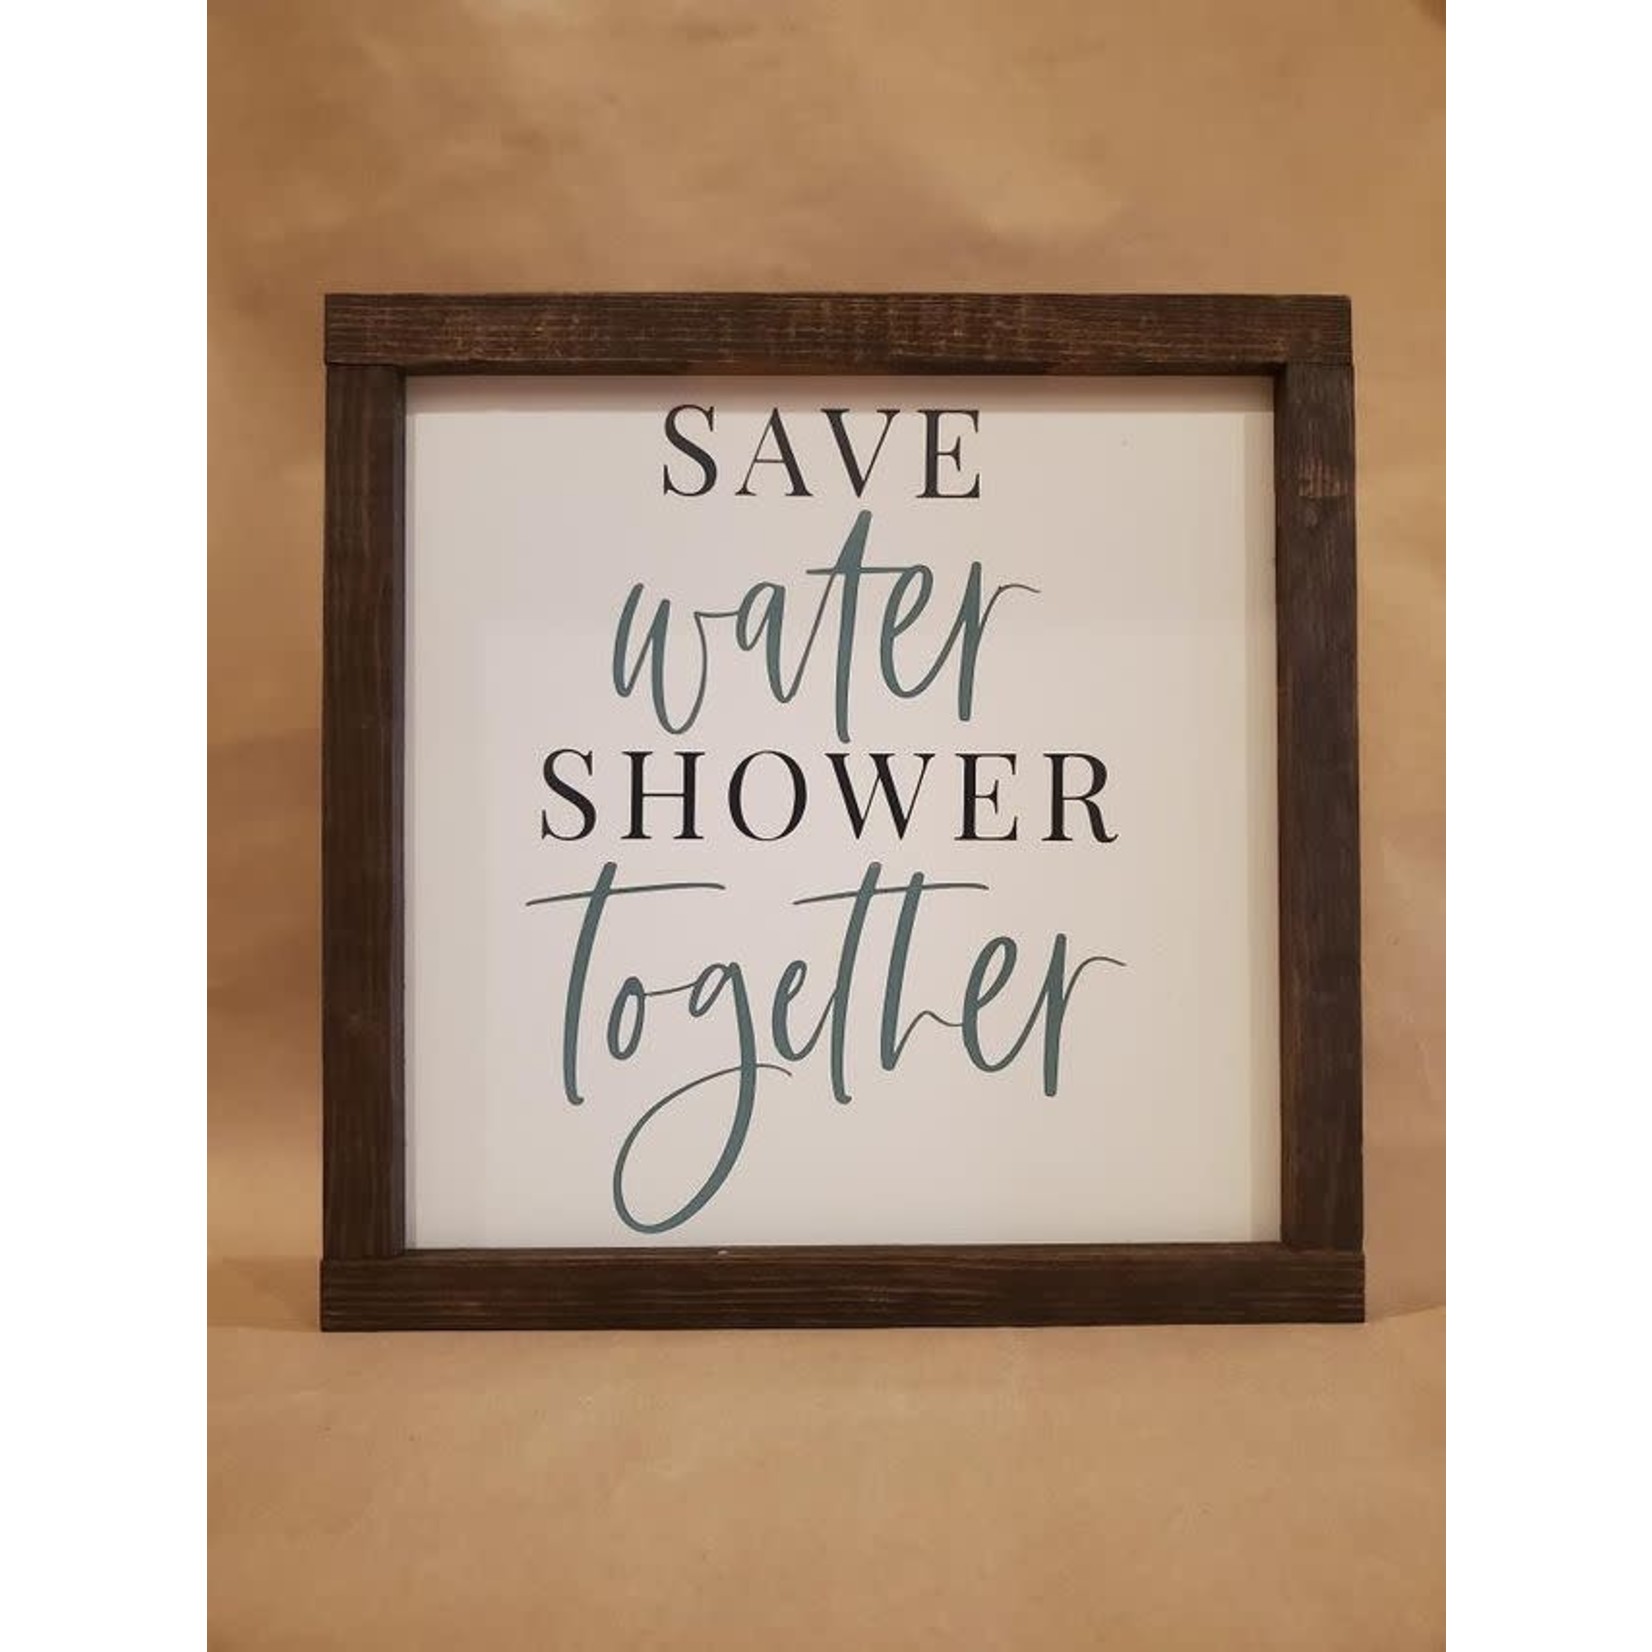 Save water shower together 10x10 framed sign